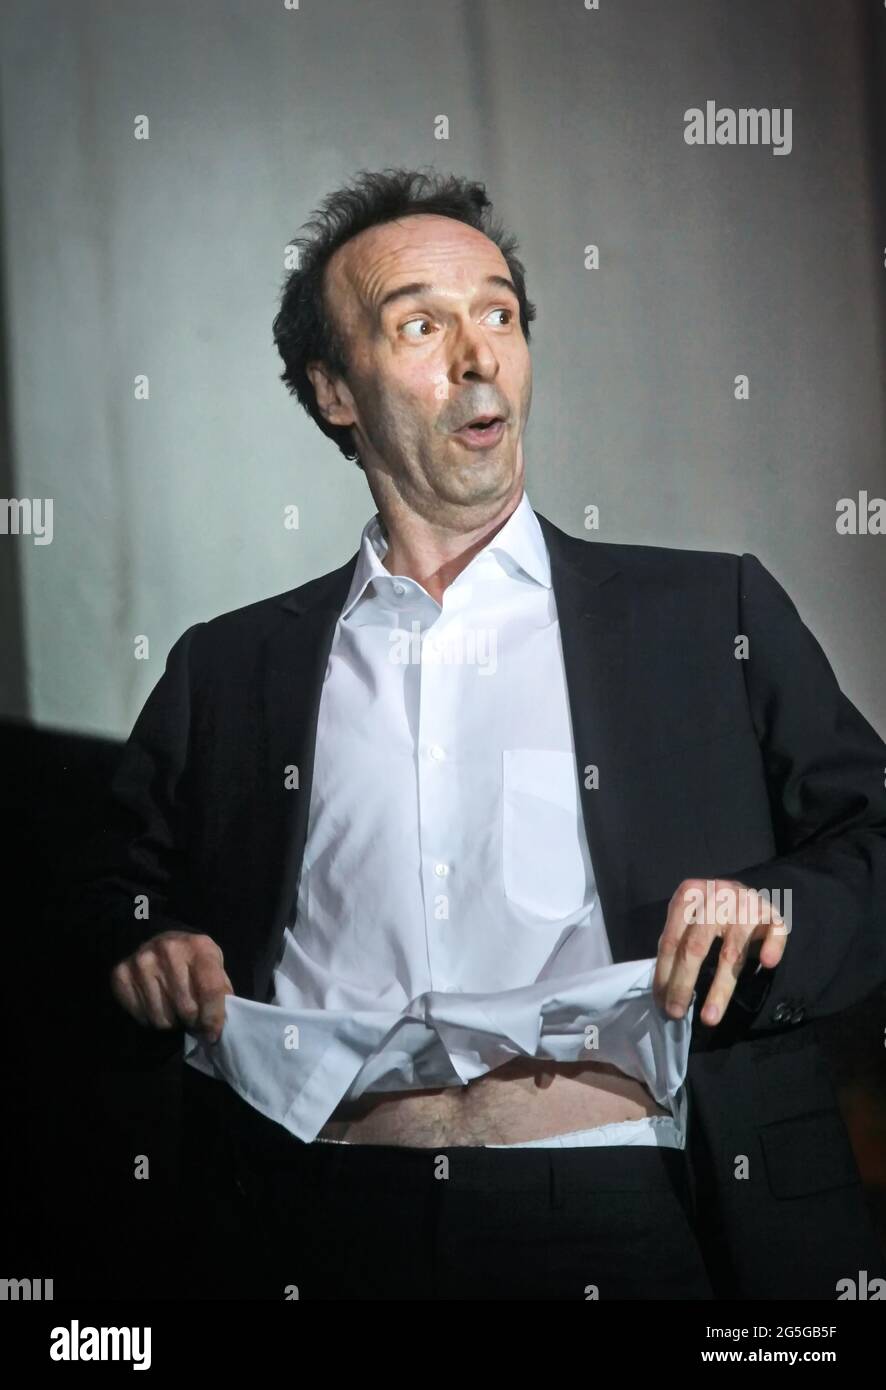 Attore italiano Roberto Benigni, gesti durante una cerimonia. Roma, Italia - Aprile 2011 Foto Stock